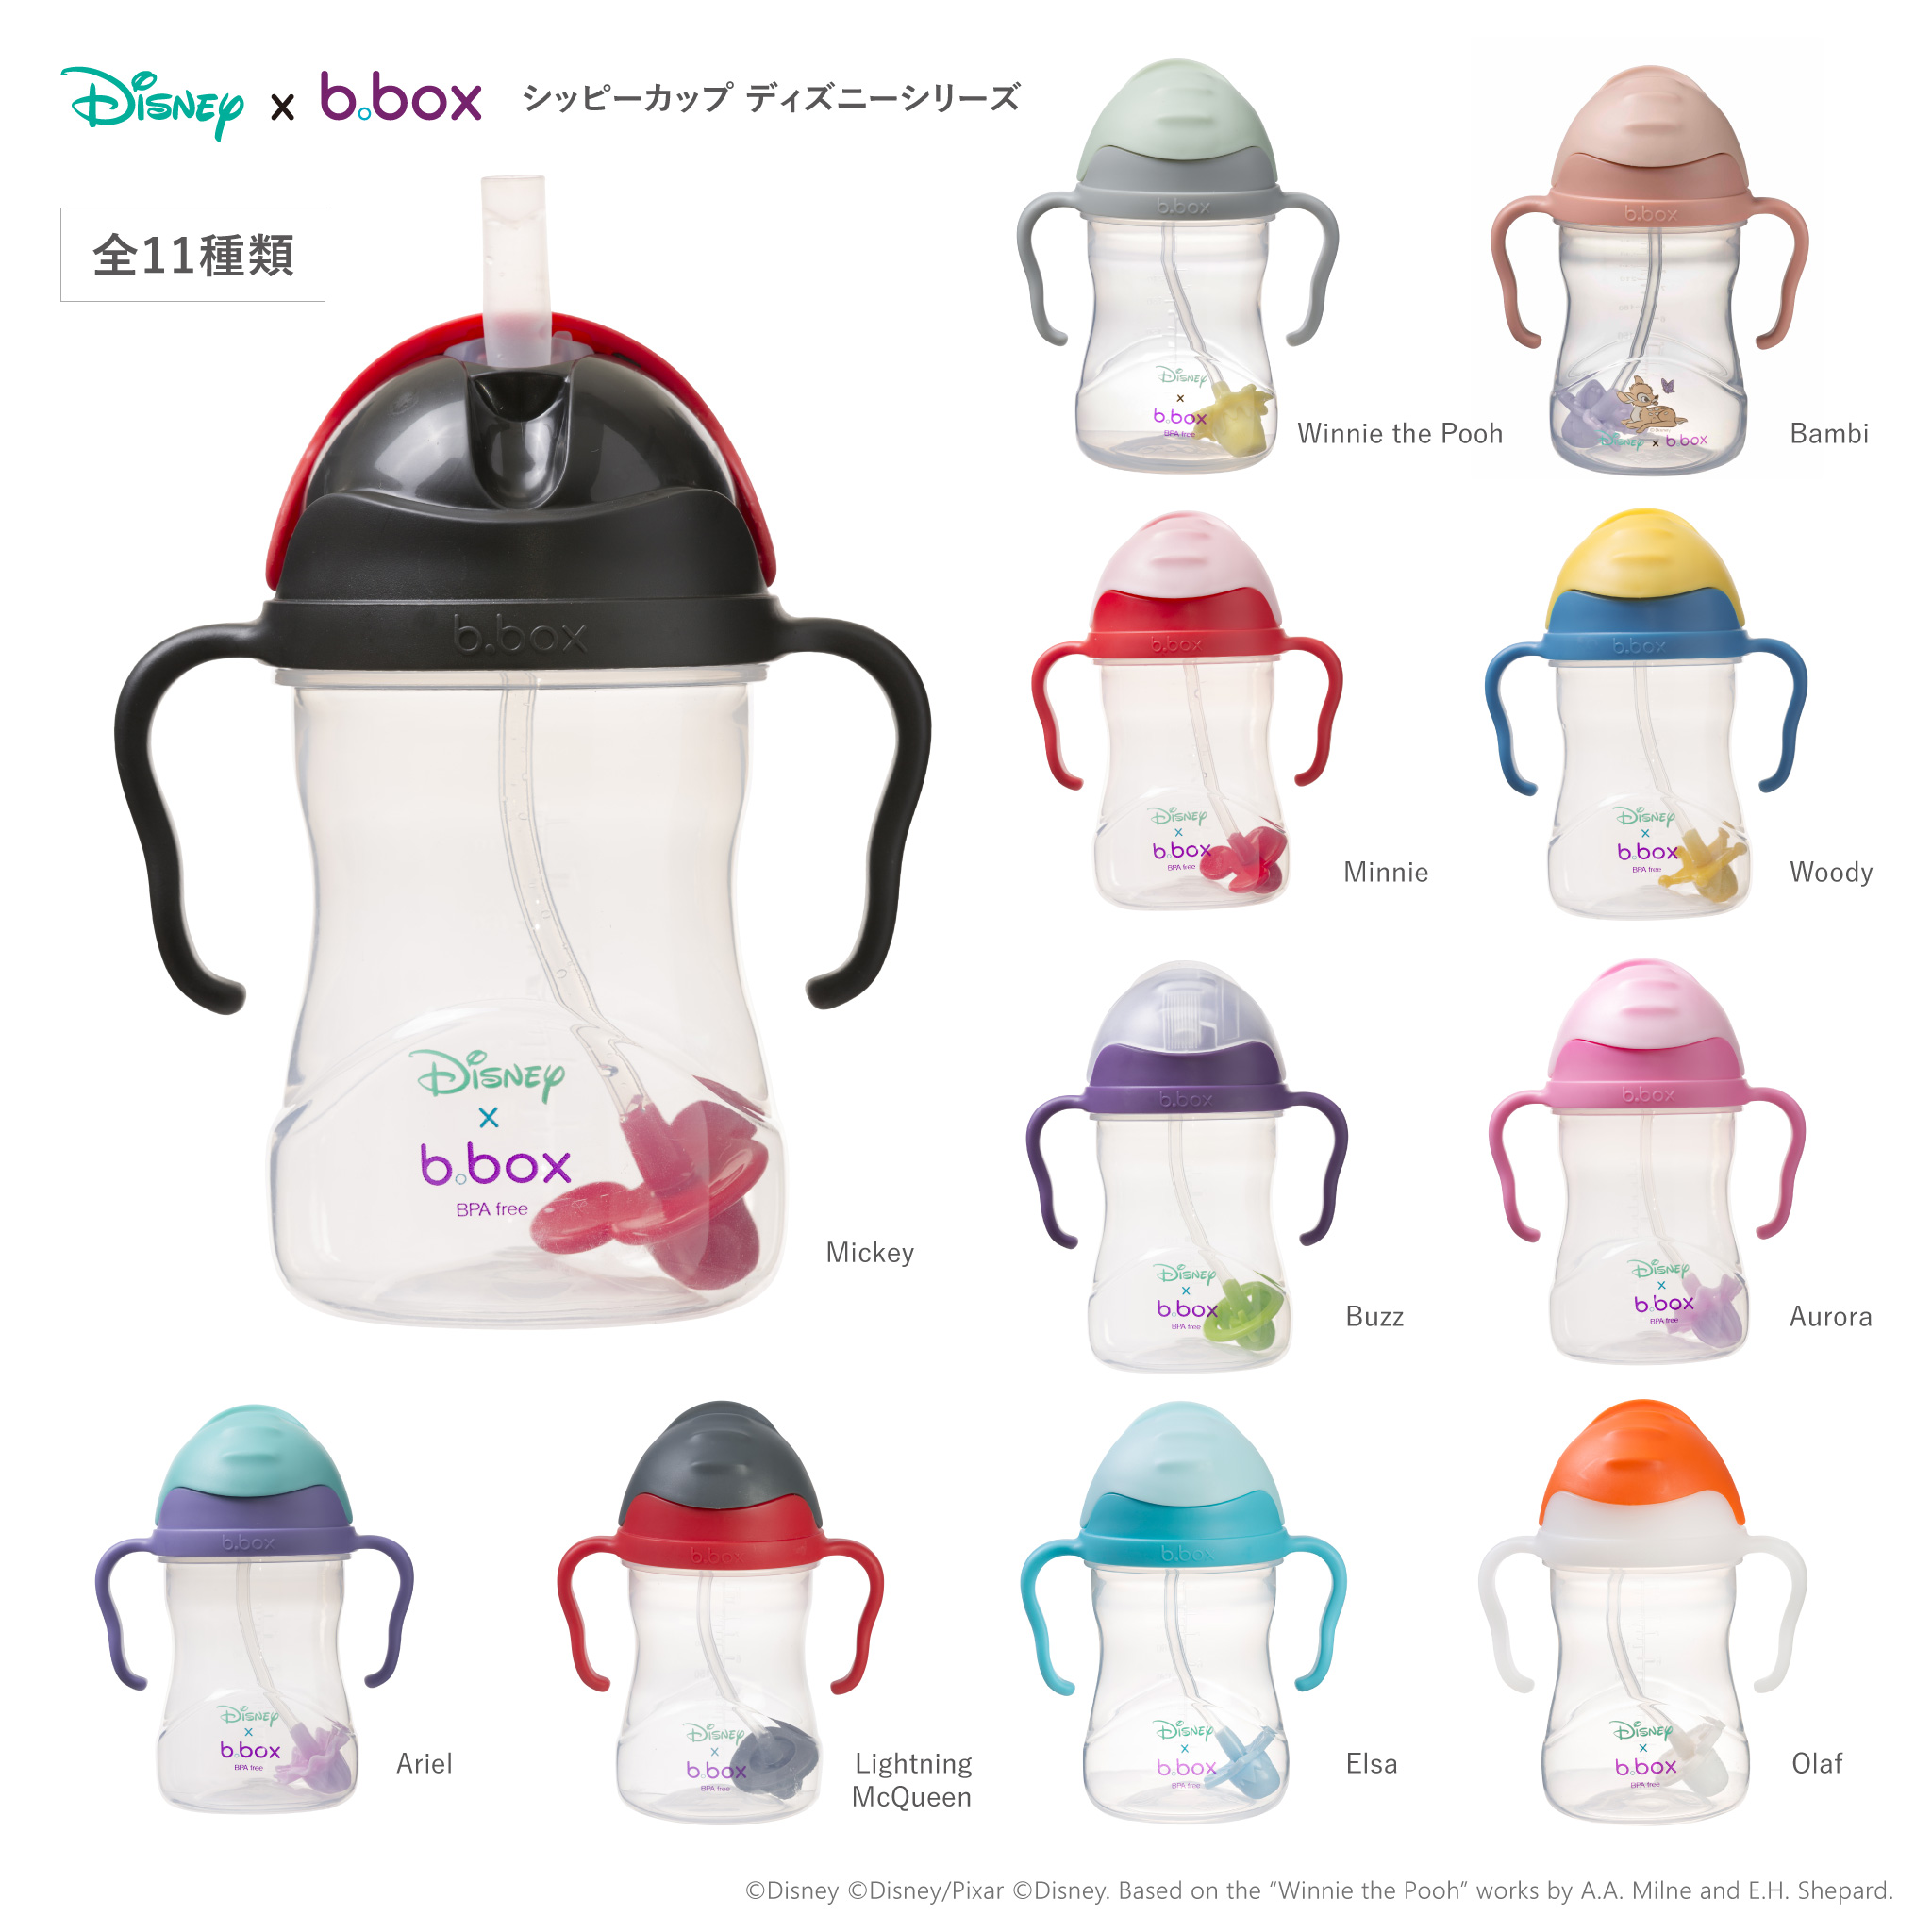 ディズニー Disney Sippy cup シッピーカップ コラボシリーズ 赤ちゃん トレーニングカップ ストロー ボトルb box  bbox ビーボックス 正規輸入品 :jpwk-bbsc-dis:Nanairo Garden ヤフー店 通販 